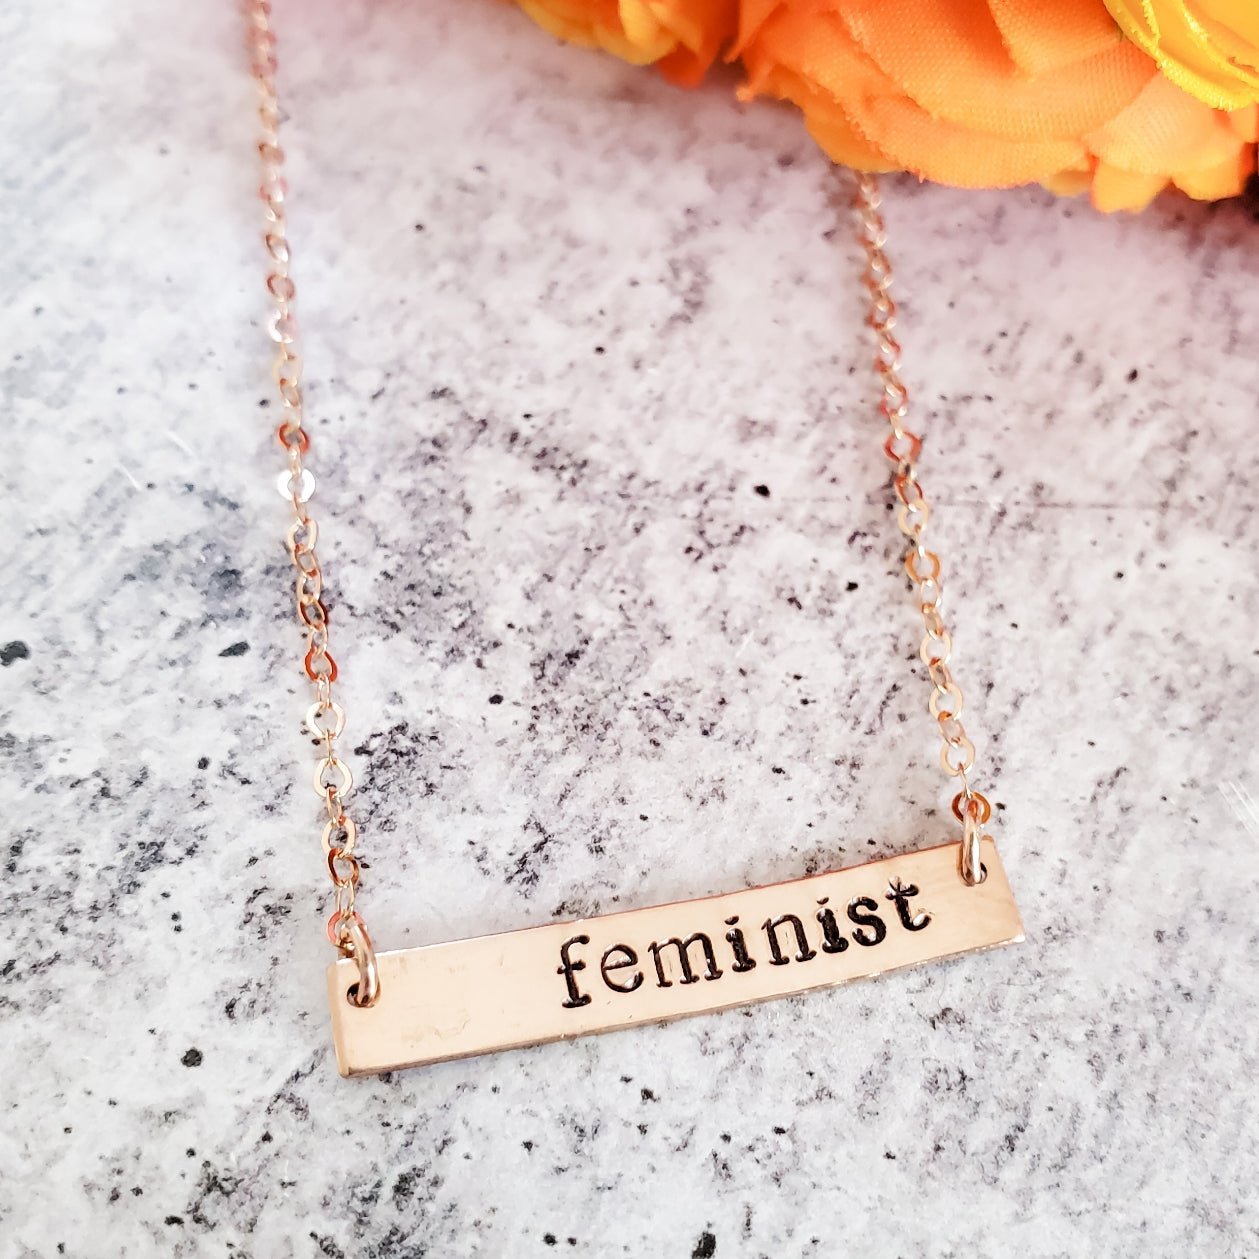 Feminist Bar Necklace in 14K Rose Gold Filled